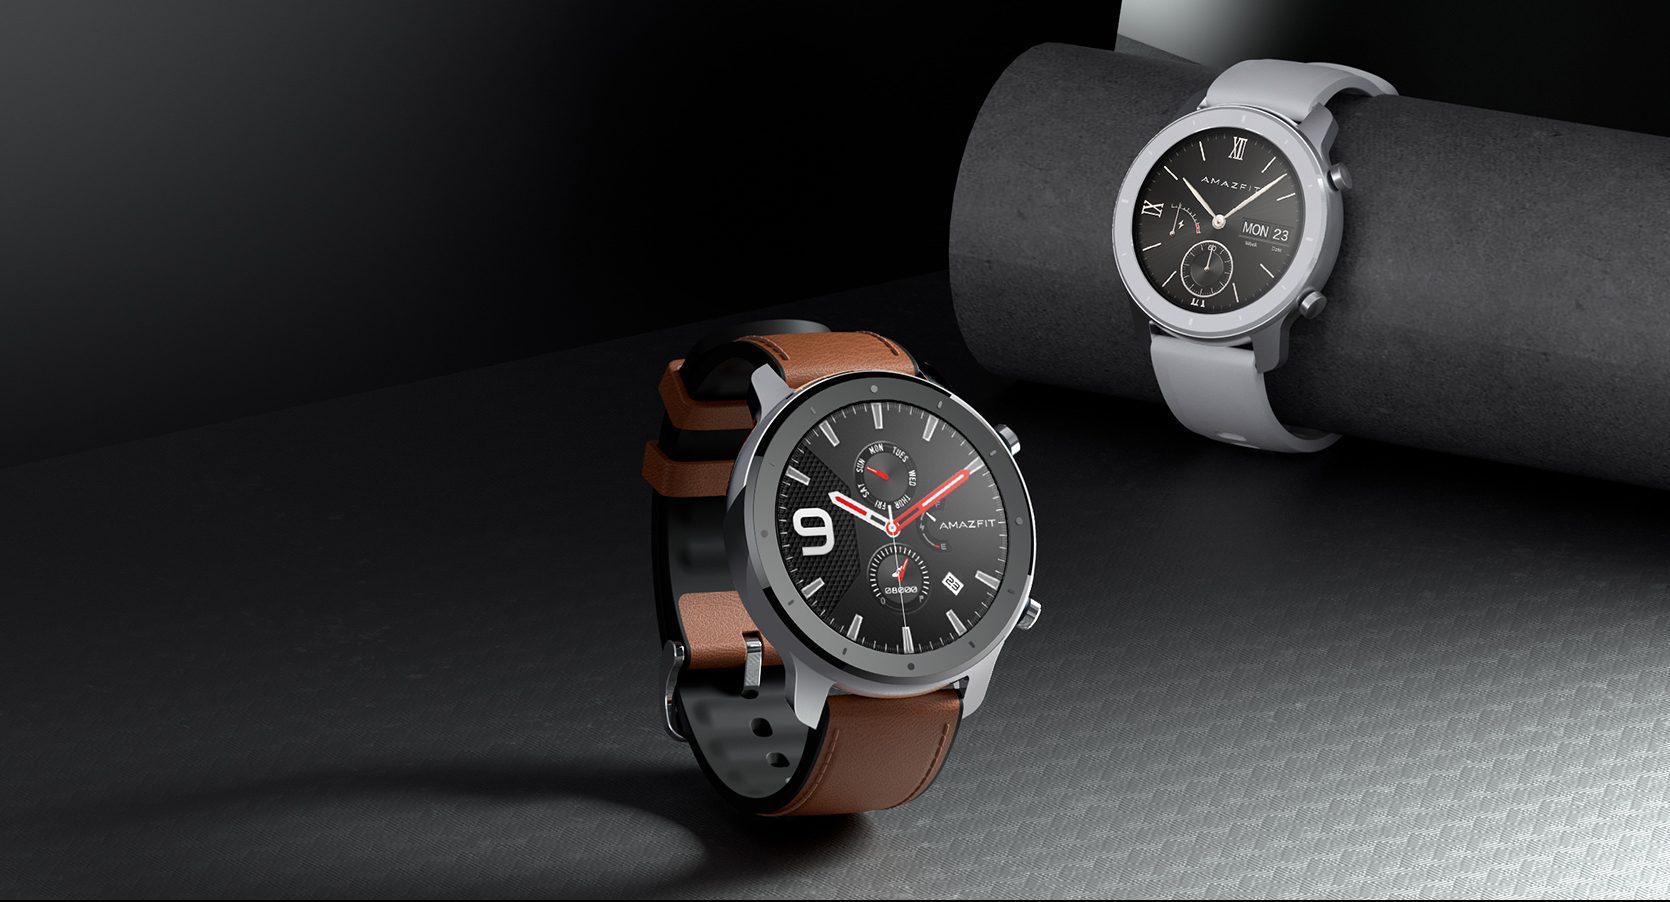 Die neue Amazfit GTR ist jetzt offiziell: Erfahren Sie alle Details dieser spektakulären Smartwatch, die in zwei Größen erhältlich ist